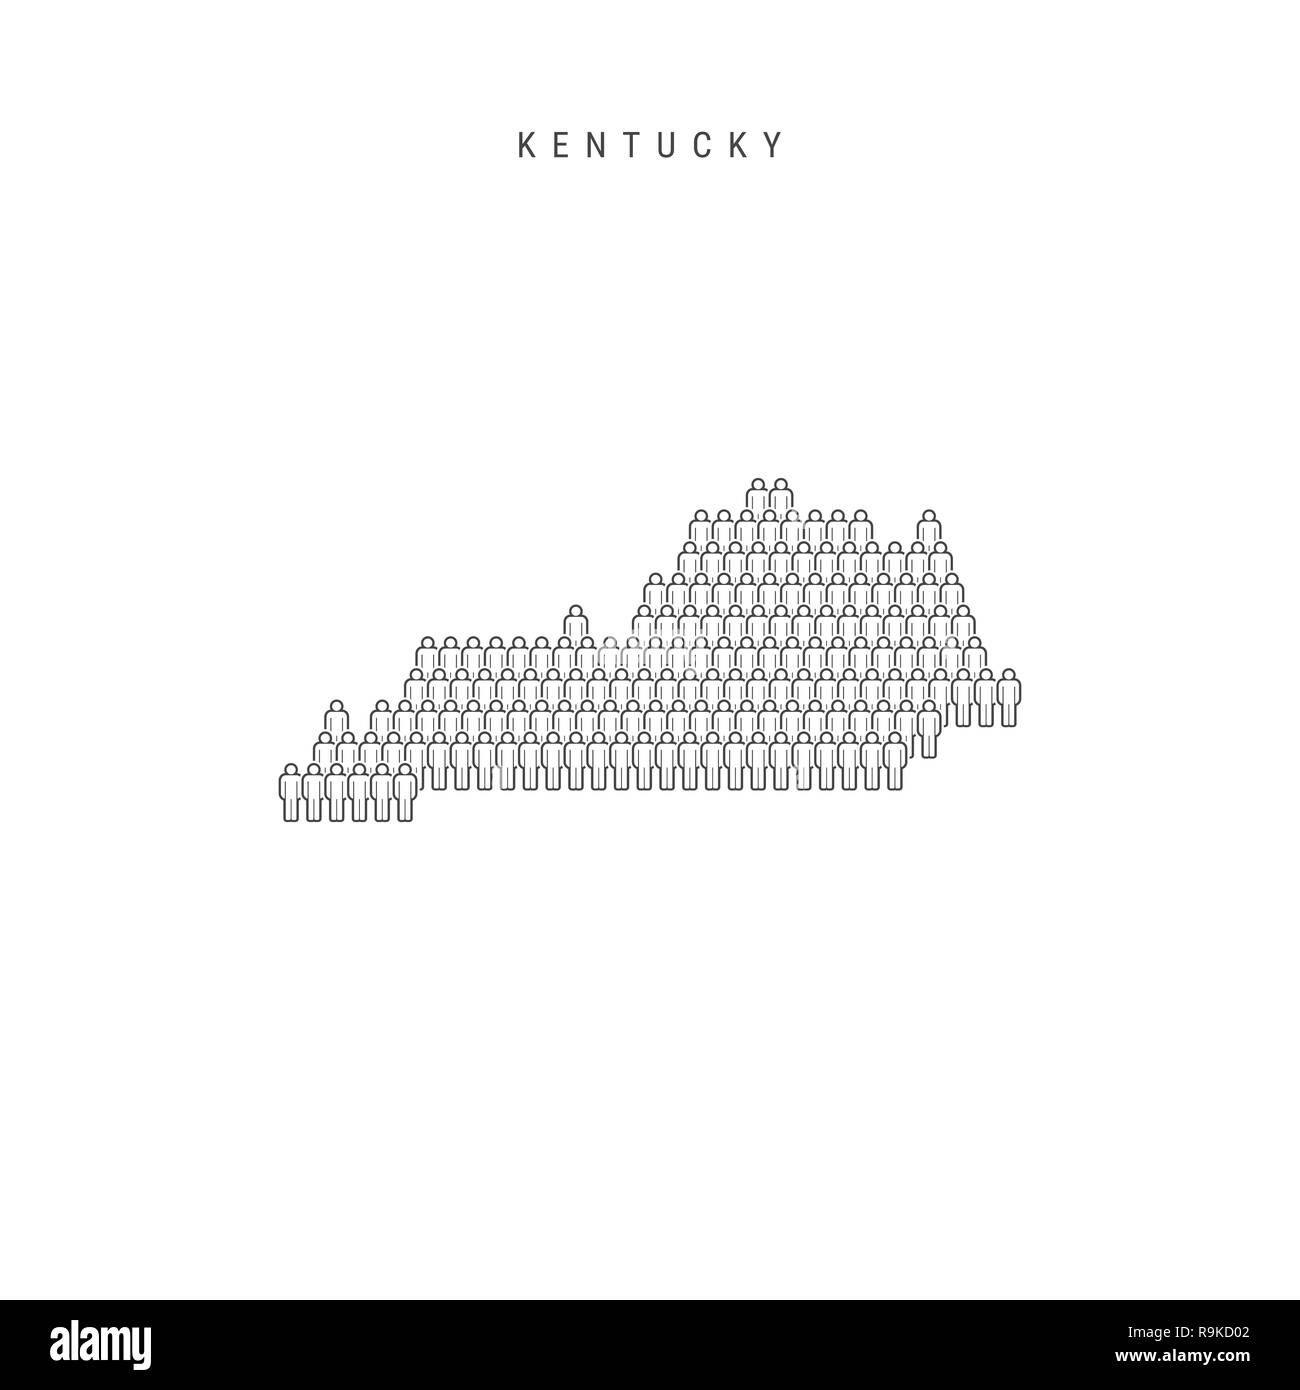 Leute Karte von Kentucky, US-Staat. Stilisierte Silhouette, Leute in der Form einer Karte von Kentucky. Kentucky Bevölkerung. Abbildung isoliert auf W Stockfoto